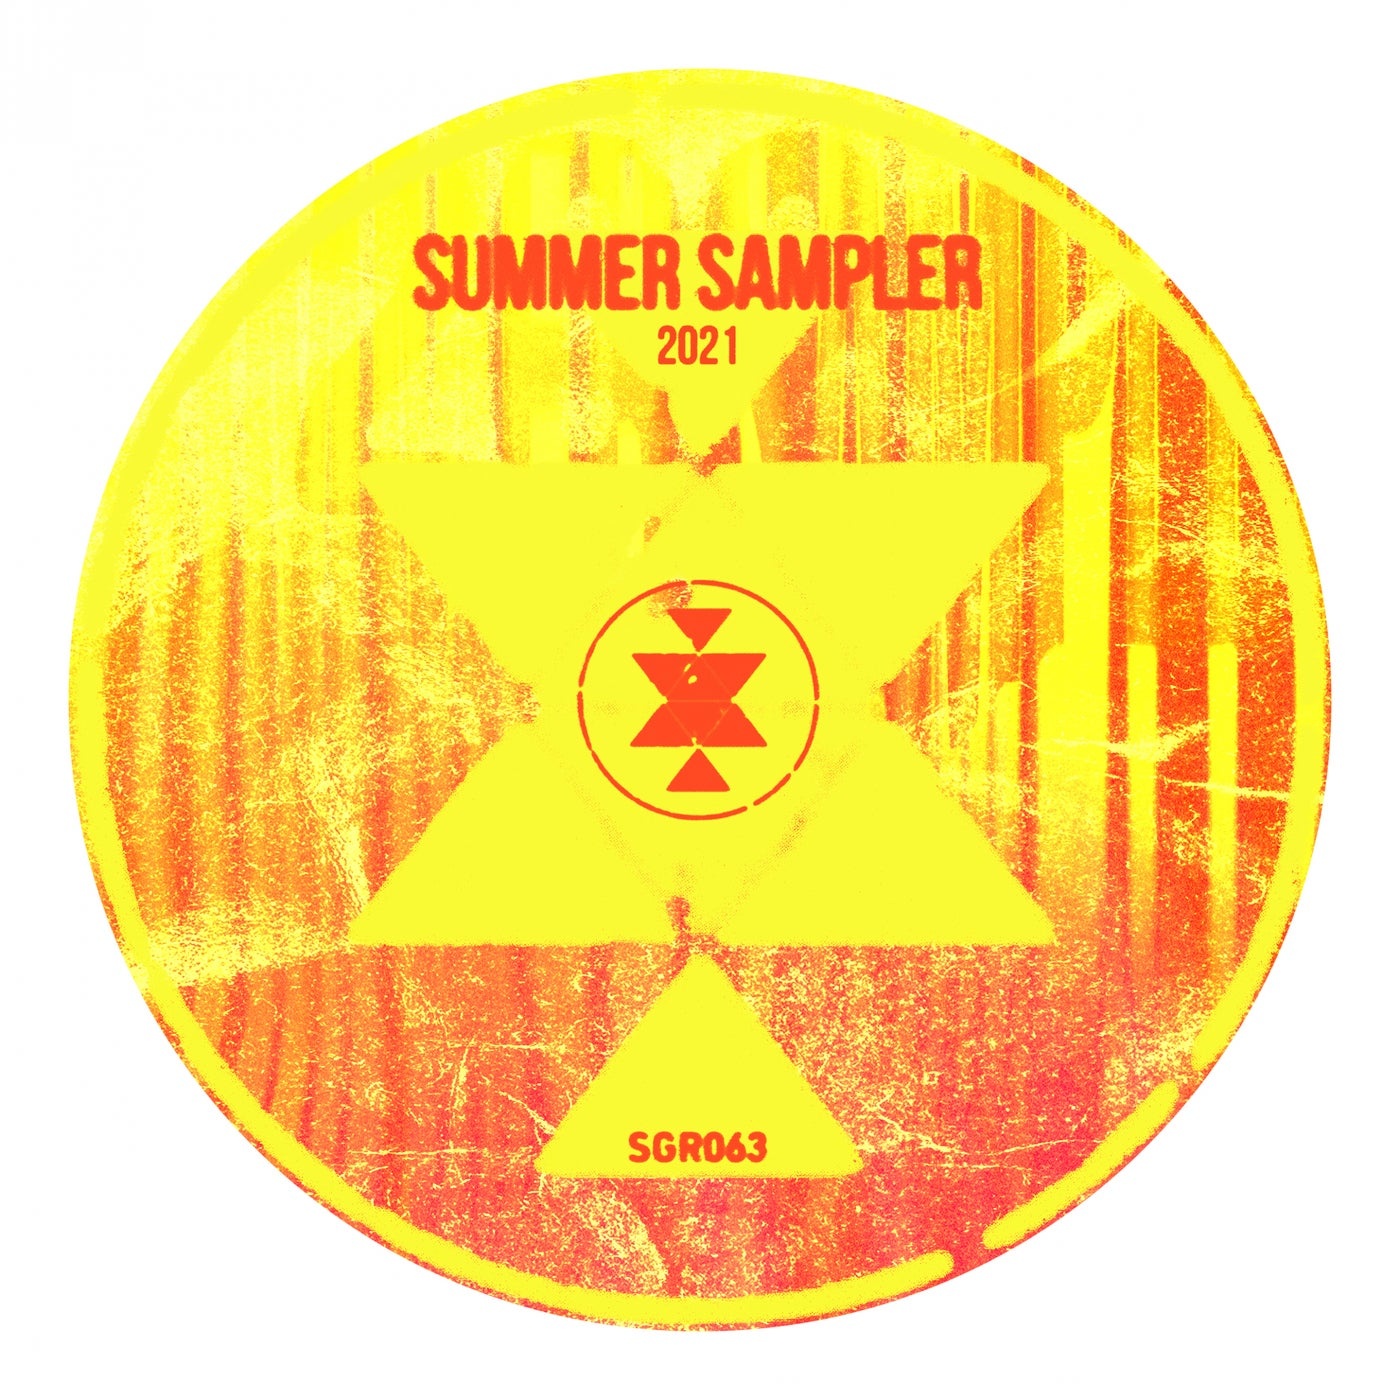 VA - Summer Sampler 2021 [SGR063]